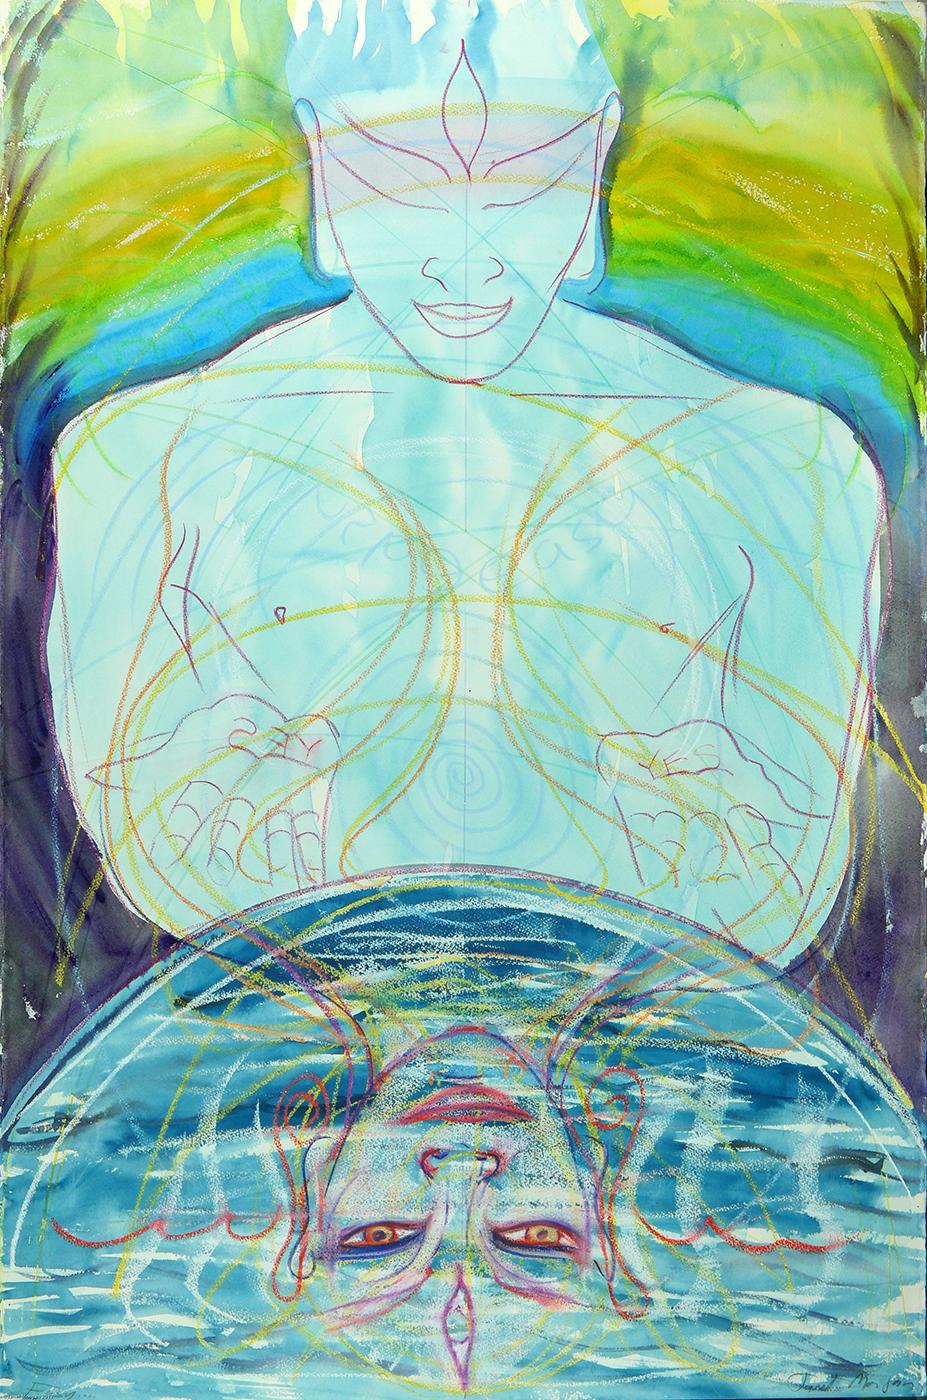 Die göttliche Figur, Wasser, Reflexion, mystische Bilder, Blau, Grün